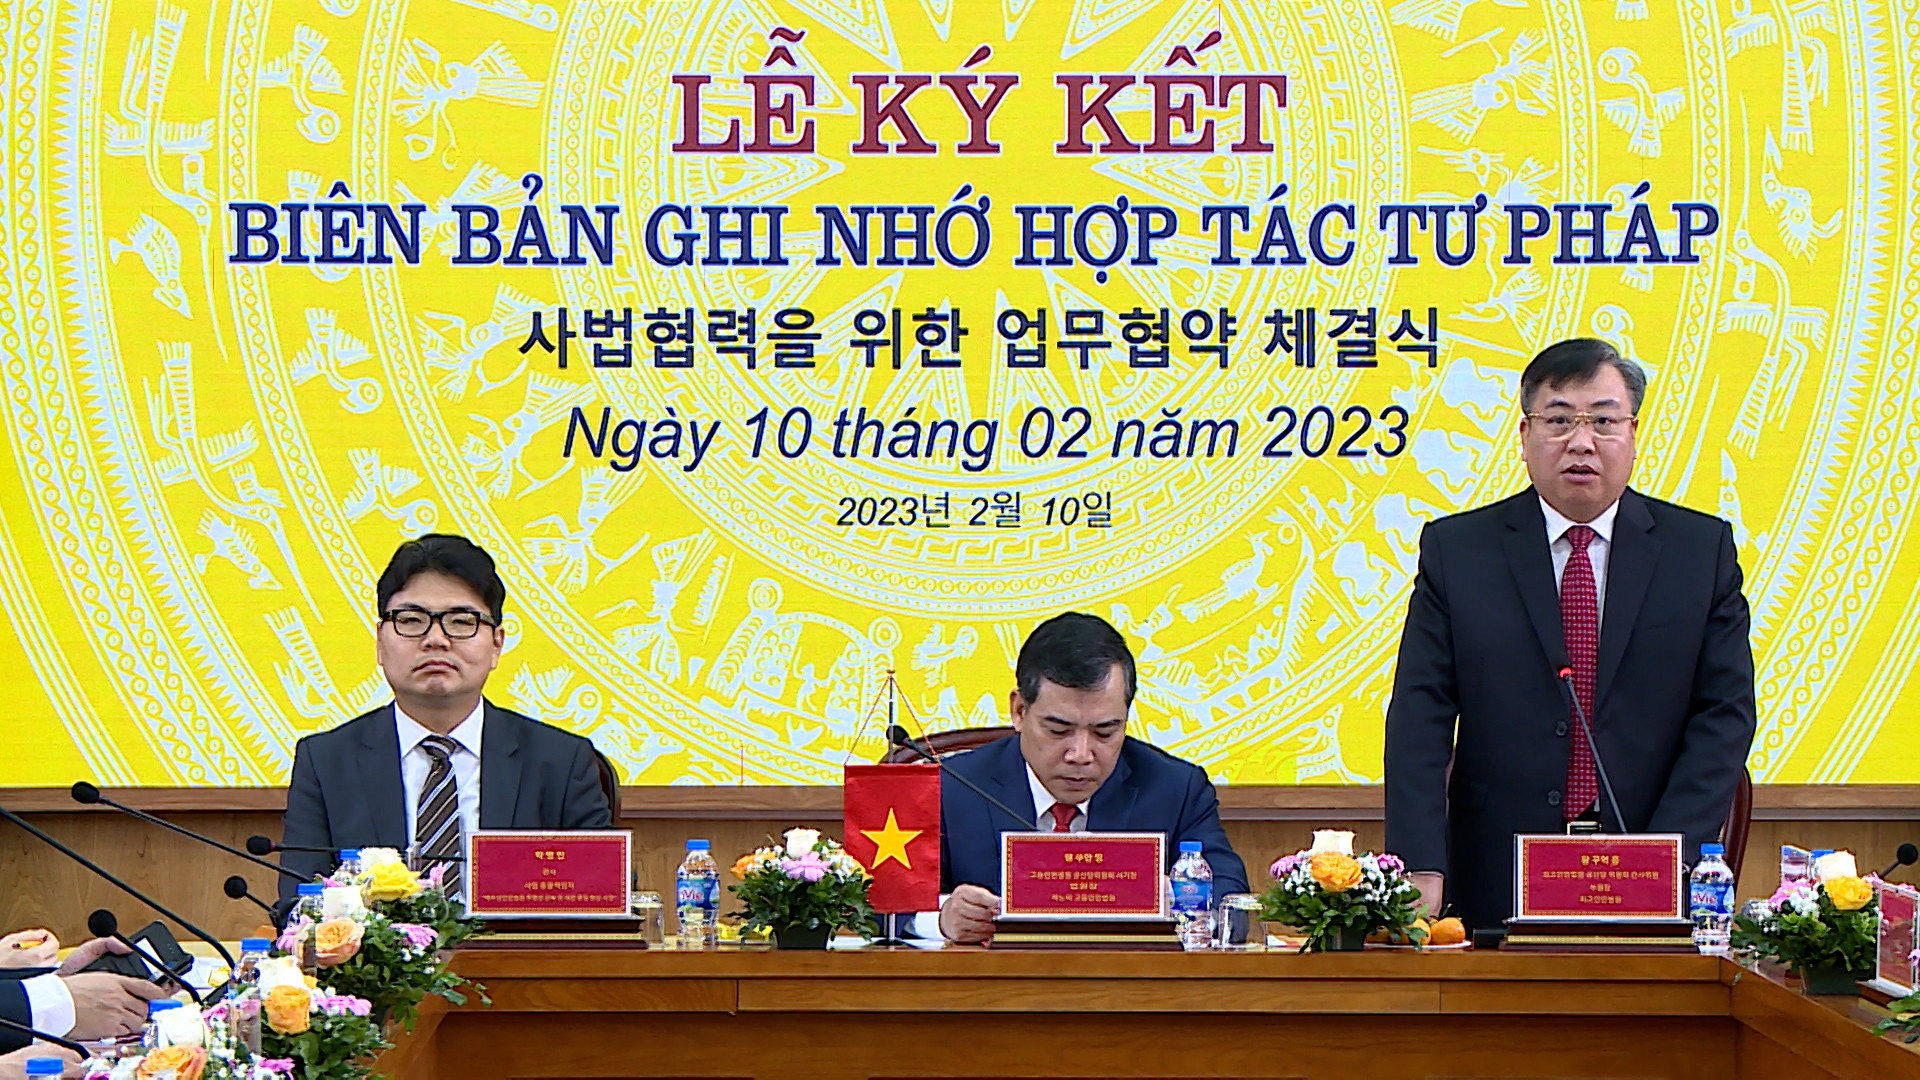 Hợp tác tư pháp giữa TAND cấp cao tại Hà Nội và Tòa án Sáng chế Hàn Quốc